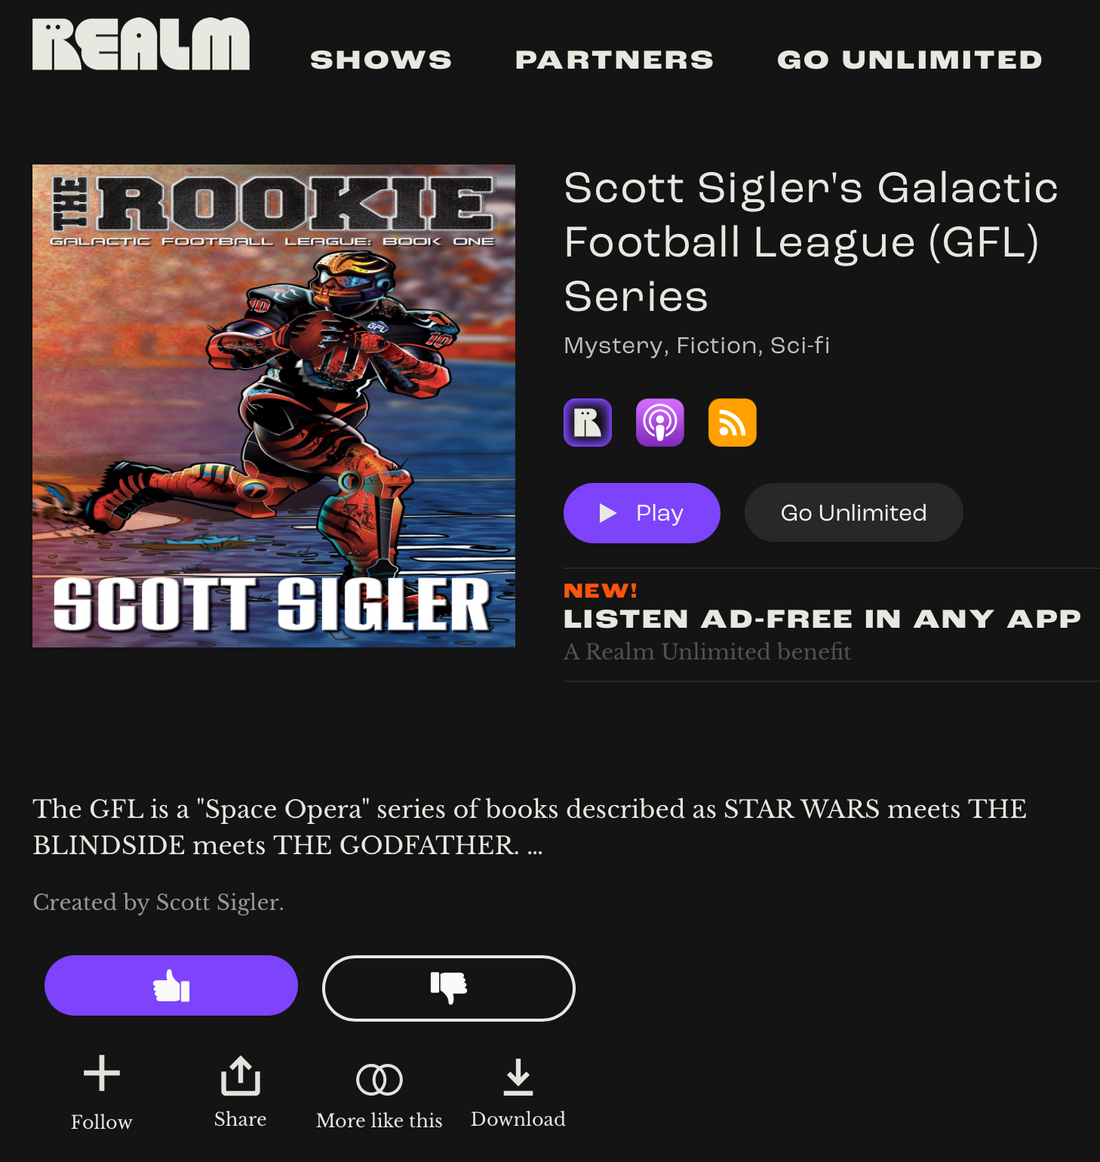 NFL kickoff = GFL podcast kickoff